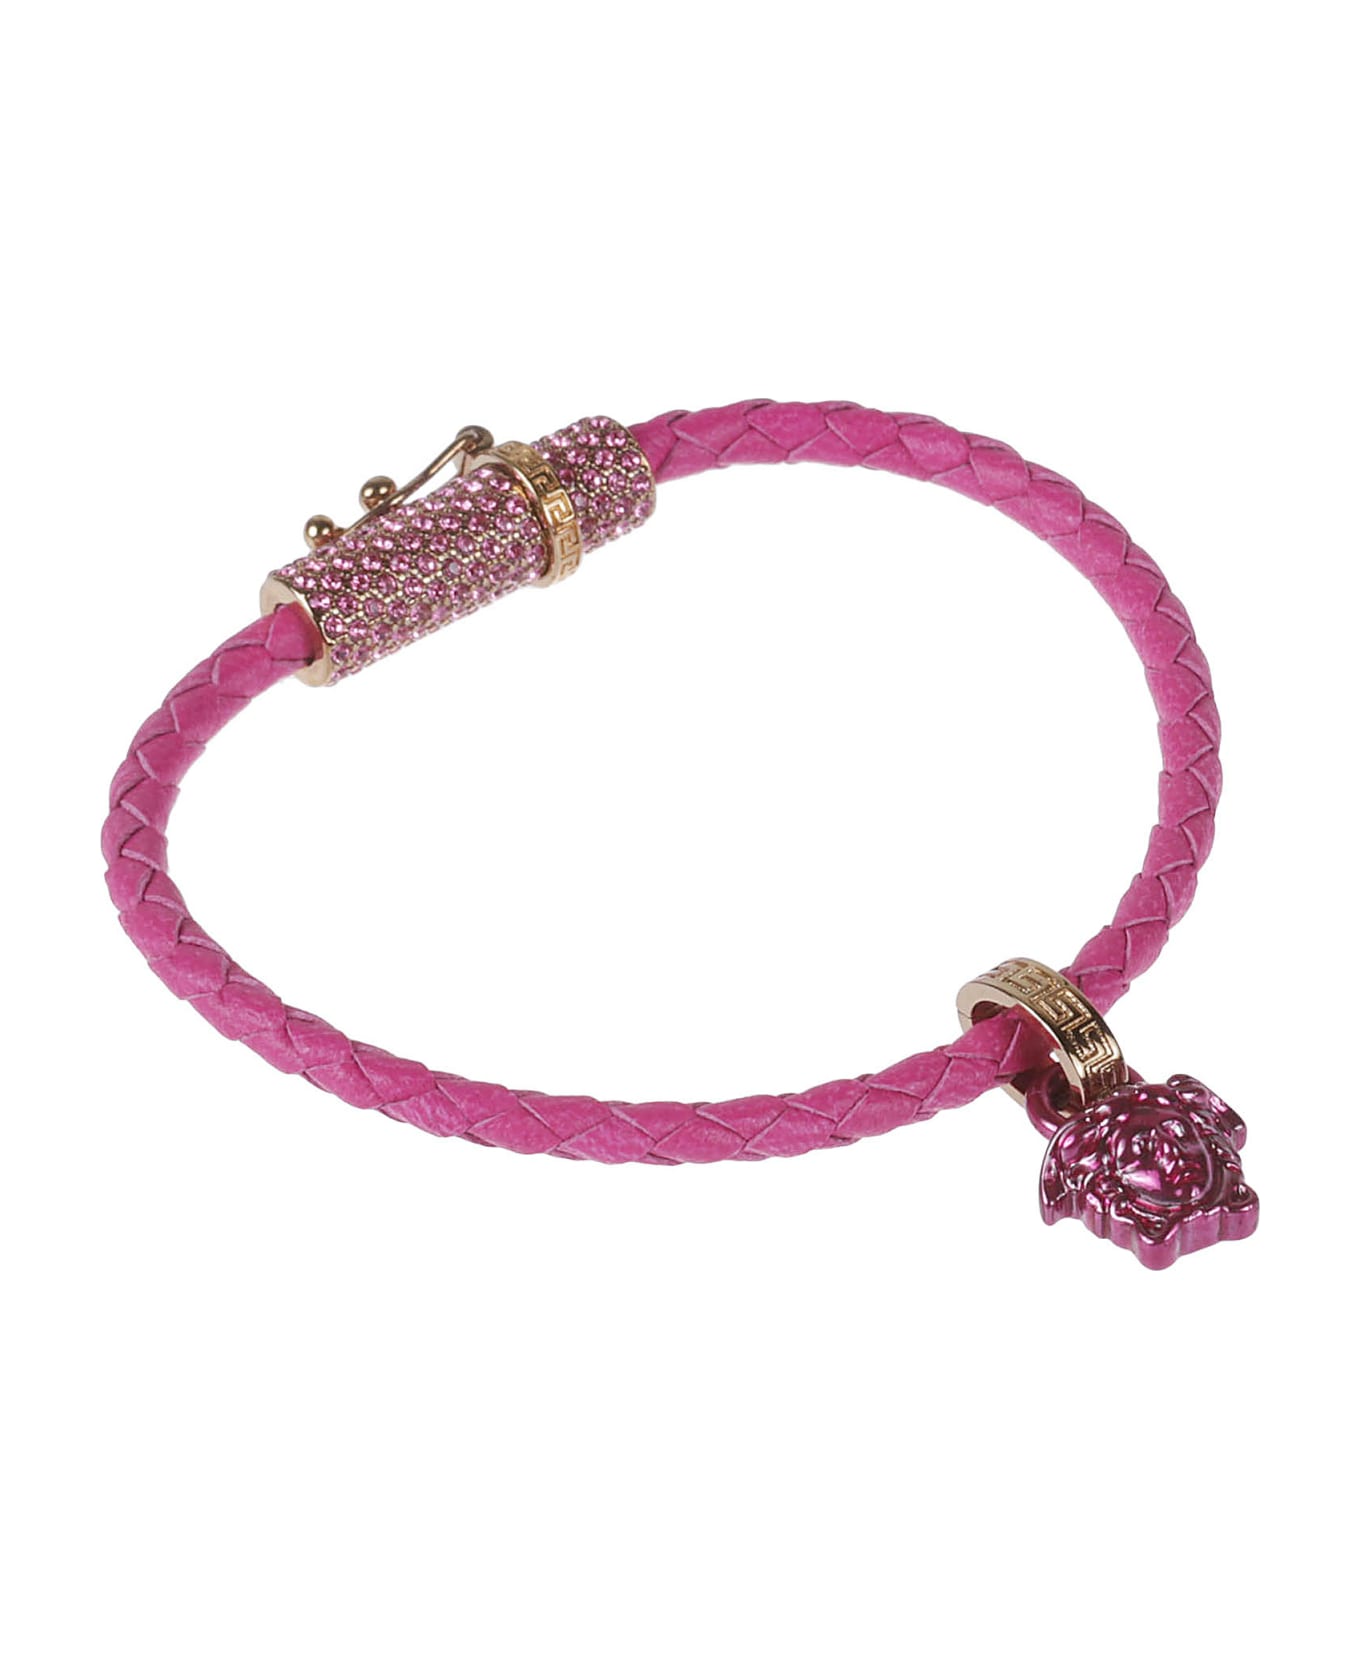 Versace Medusa Bracelet - Glossy Pink